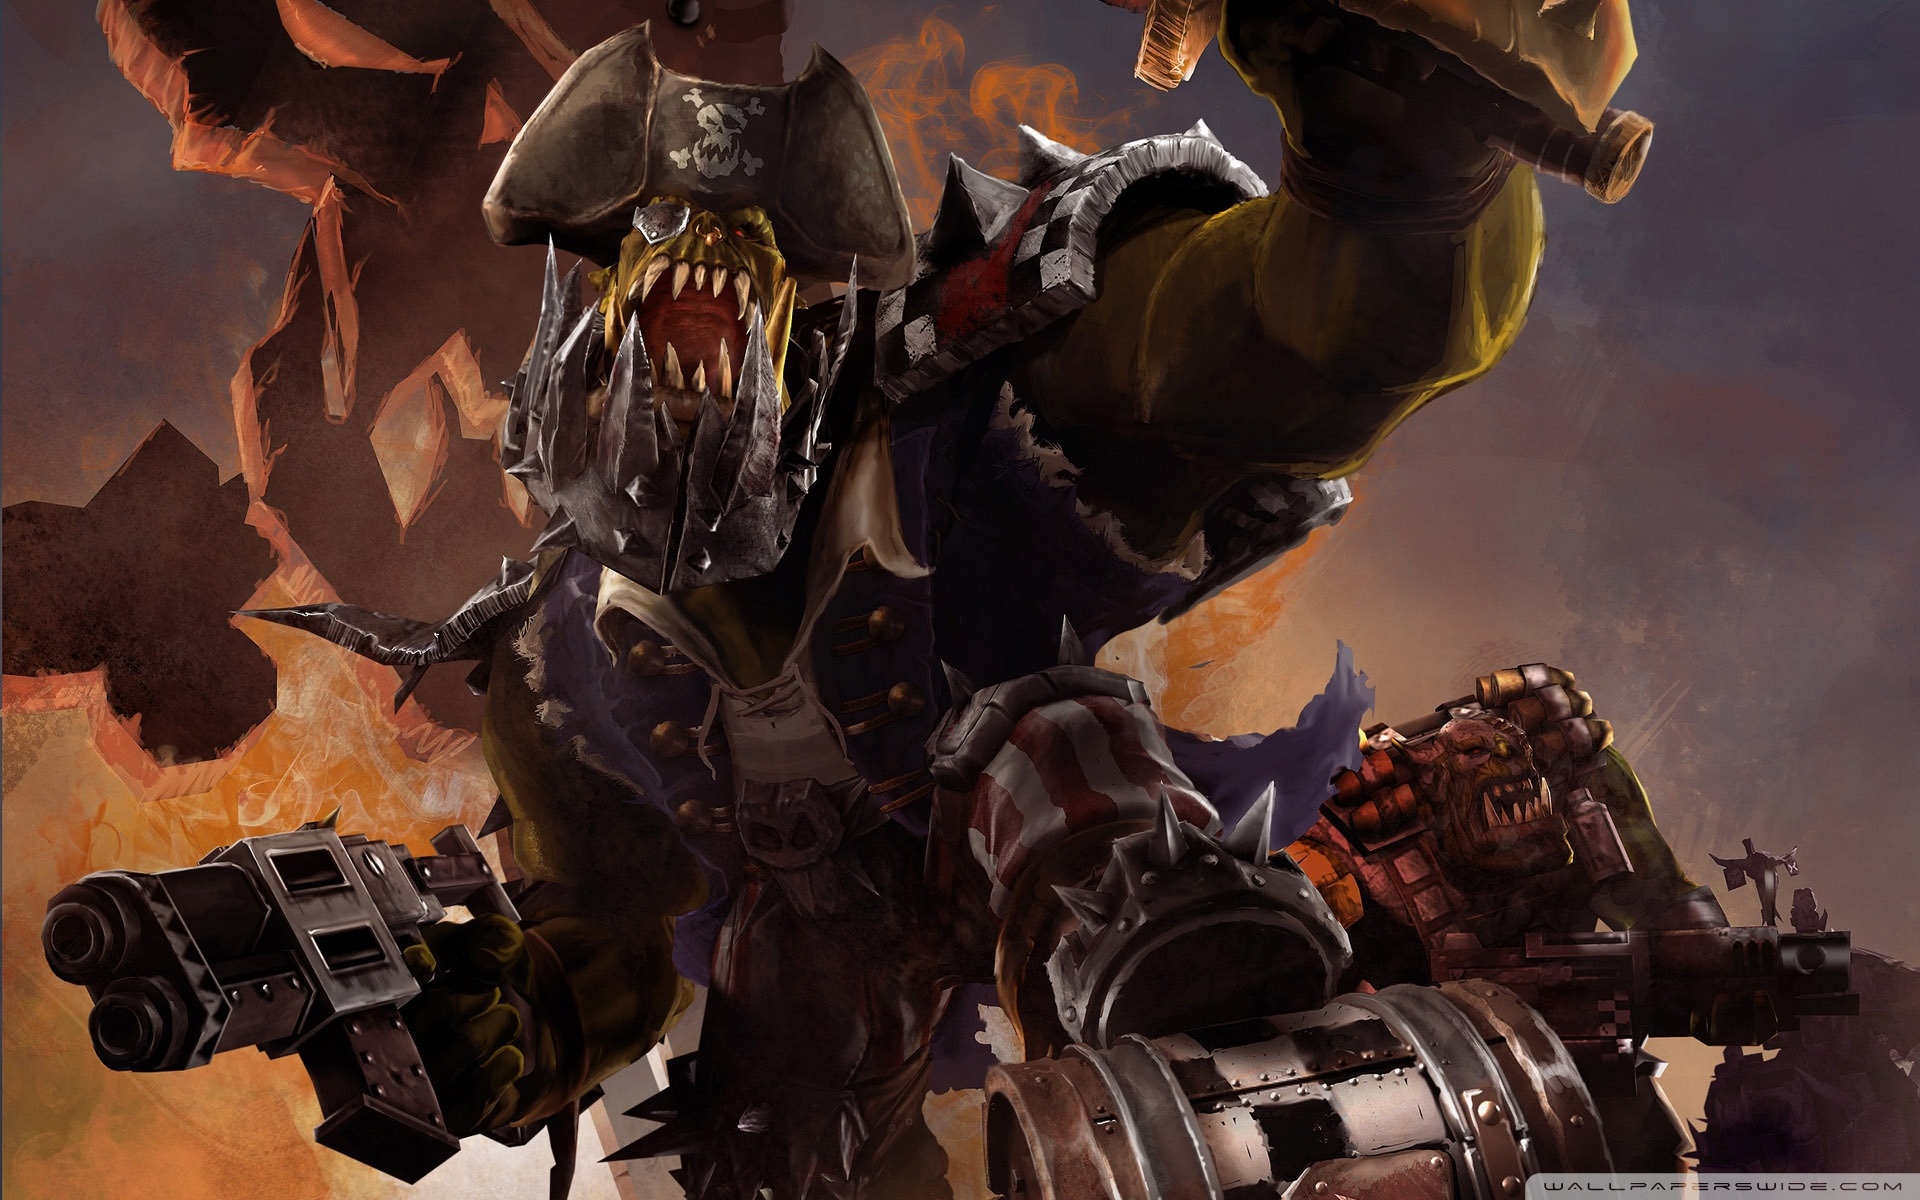 Cuộc chiến chống lại quân Ork đang hoành hành, và bạn được mời làm chiến binh dũng cảm của thế giới Warhammer 40k, hãy tải ngay miễn phí hình nền The Ork Menace Warhammer 40k Wallpaper để khẳng định niềm đam mê và cảm nhận lực lượng quân sự mạnh mẽ mỗi khi màn hình hiện lên.